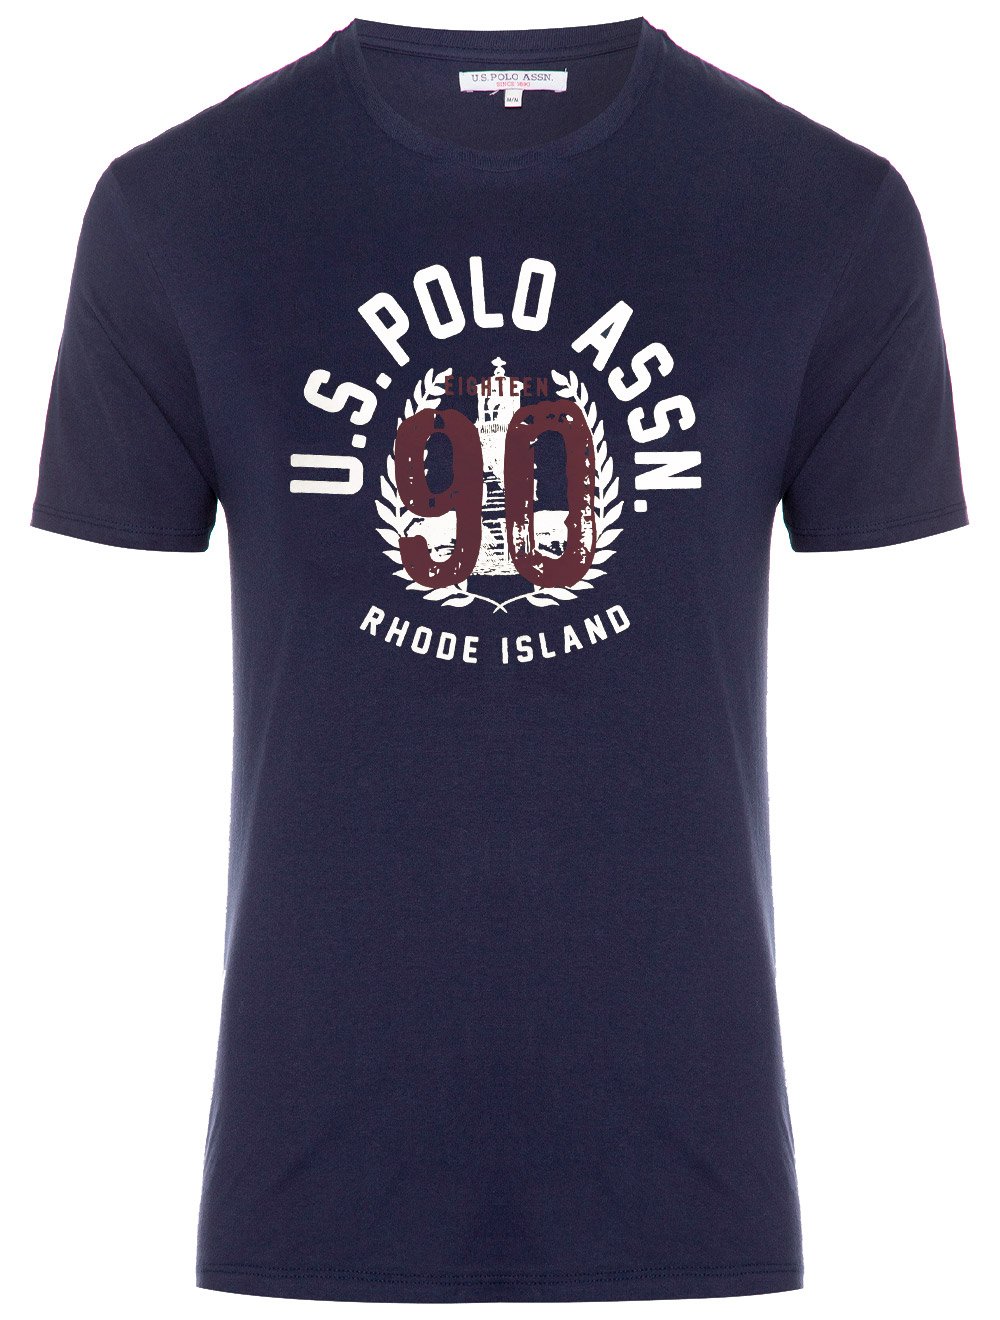 Camiseta U.S. Polo Assn Masculina Meia Malha Rhode Island Azul Marinho